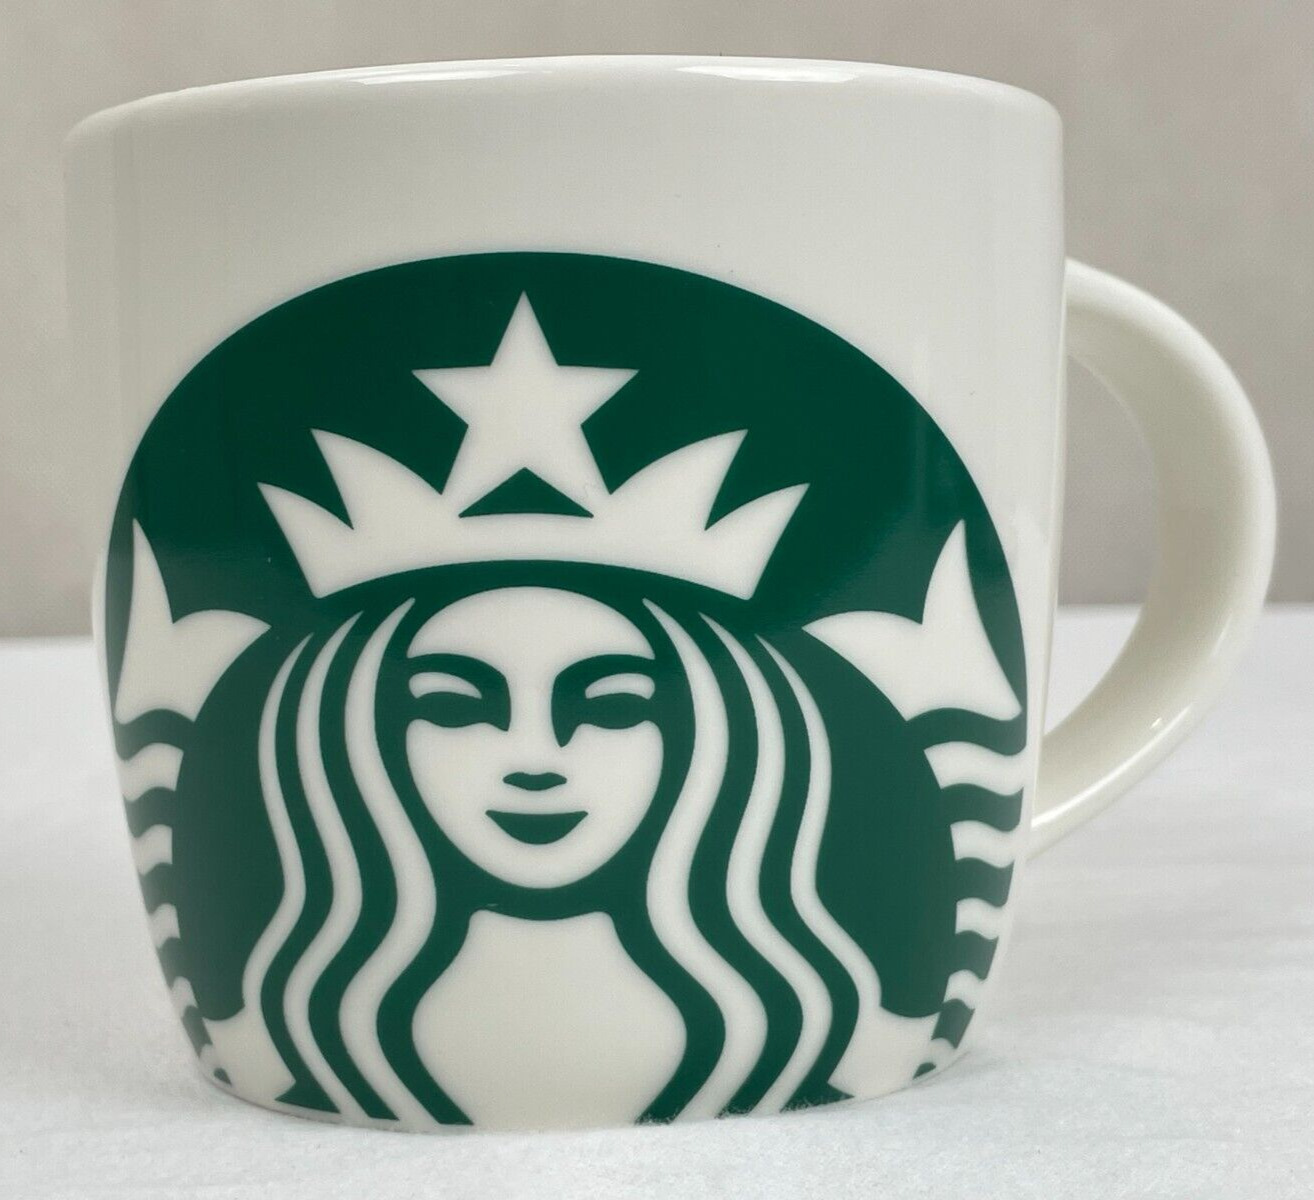 Starbucks Mug 2017 Classic White Green Mermaid Logo Coffee Mug 14 Oz Mint